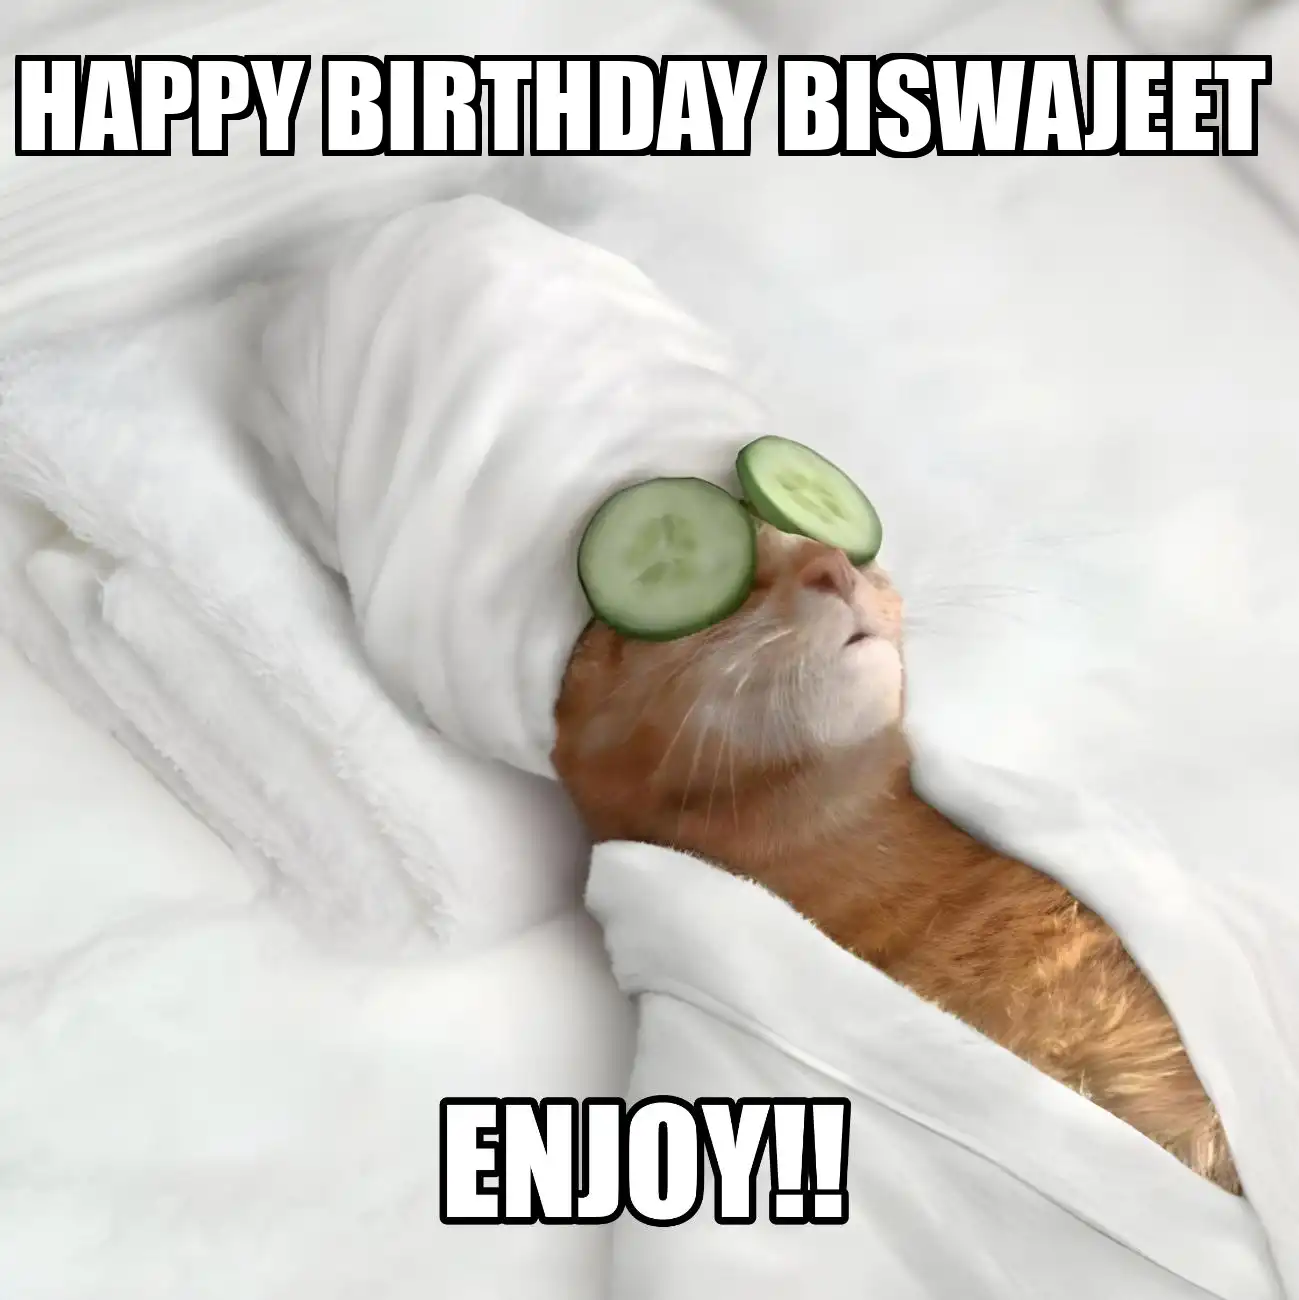 Happy Birthday Biswajeet Enjoy Cat Meme